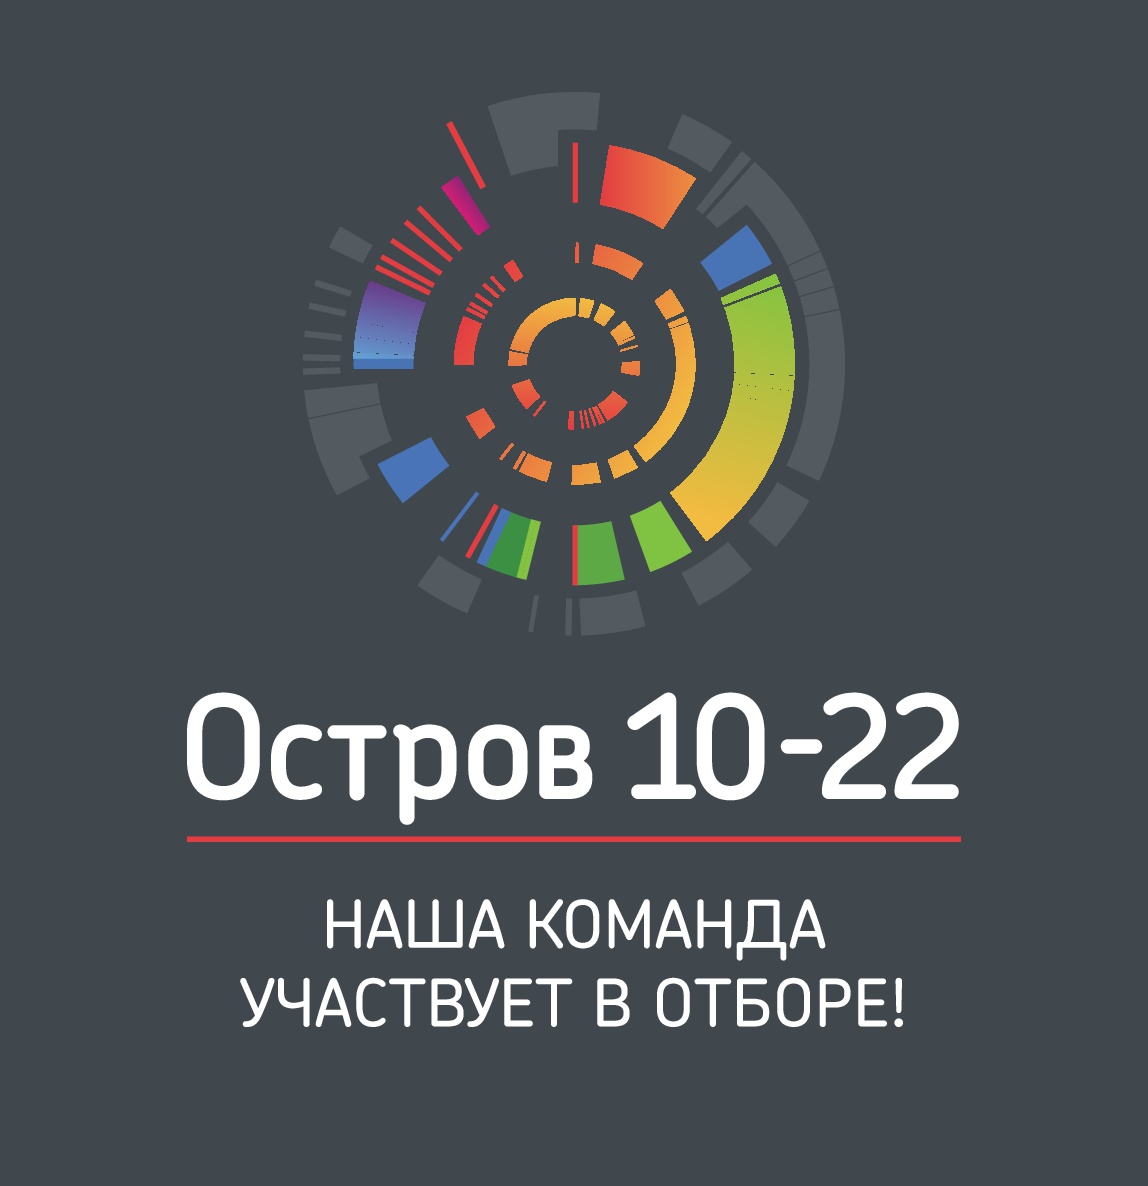 О проведении образовательного интенсива «Остров 10-22» с 10 по 22 июля 2019 г. в Москве